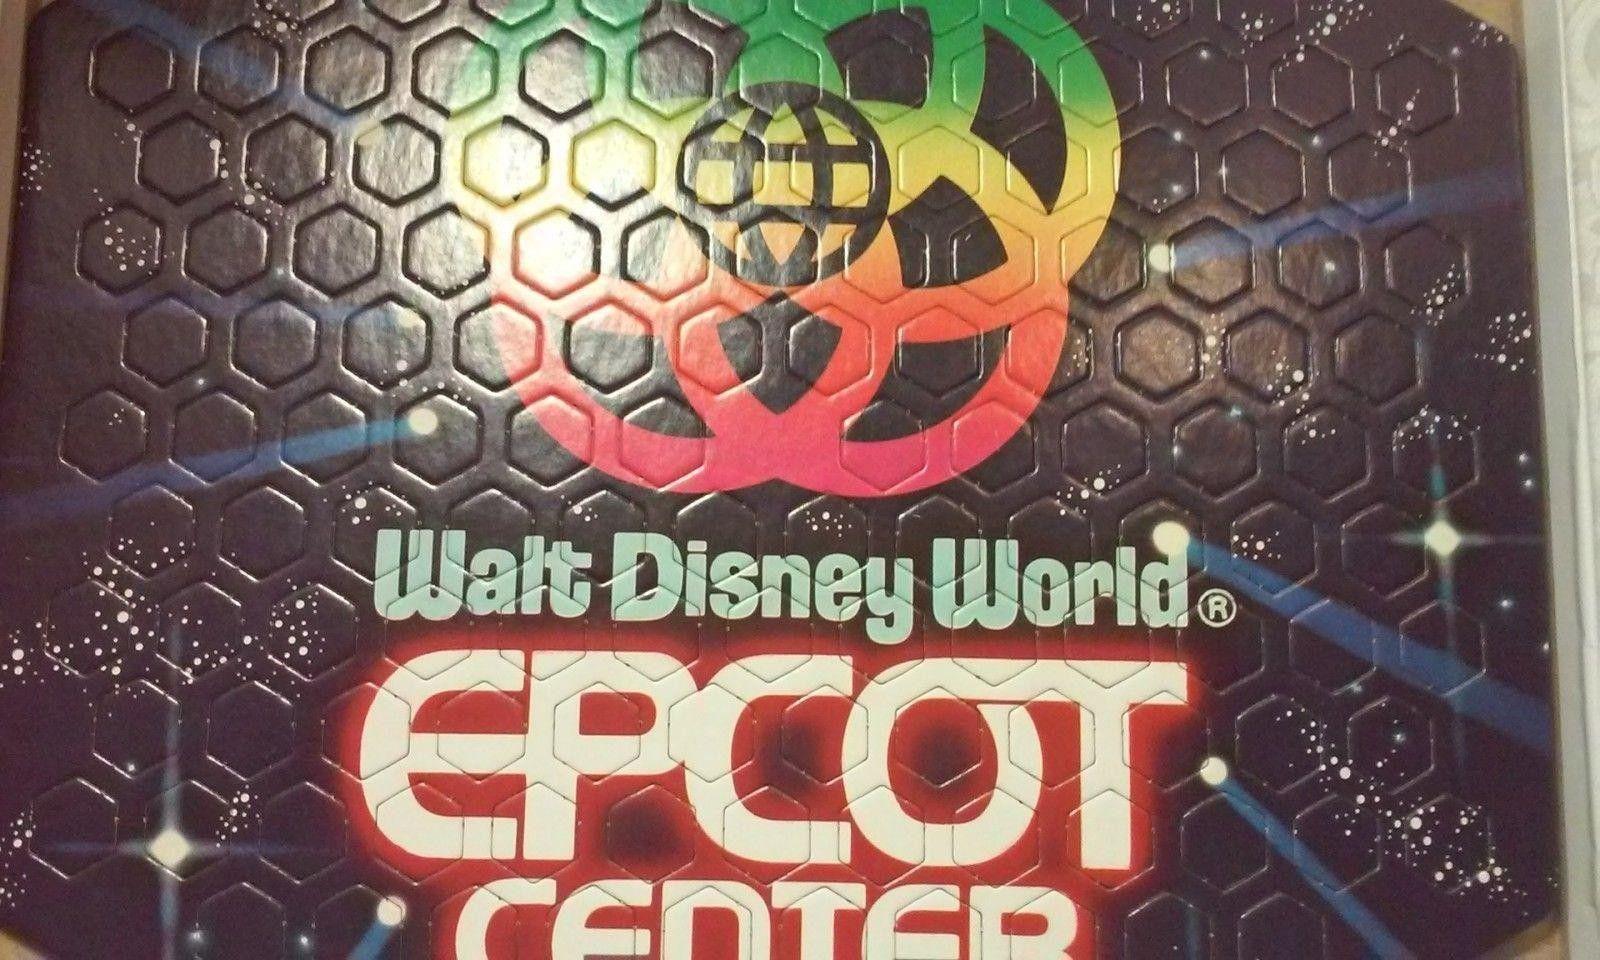 Original Walt Disney World Logo - EPCOT Center, Original 1982 EPCOT Logo Puzzle. Walt Disney World ...